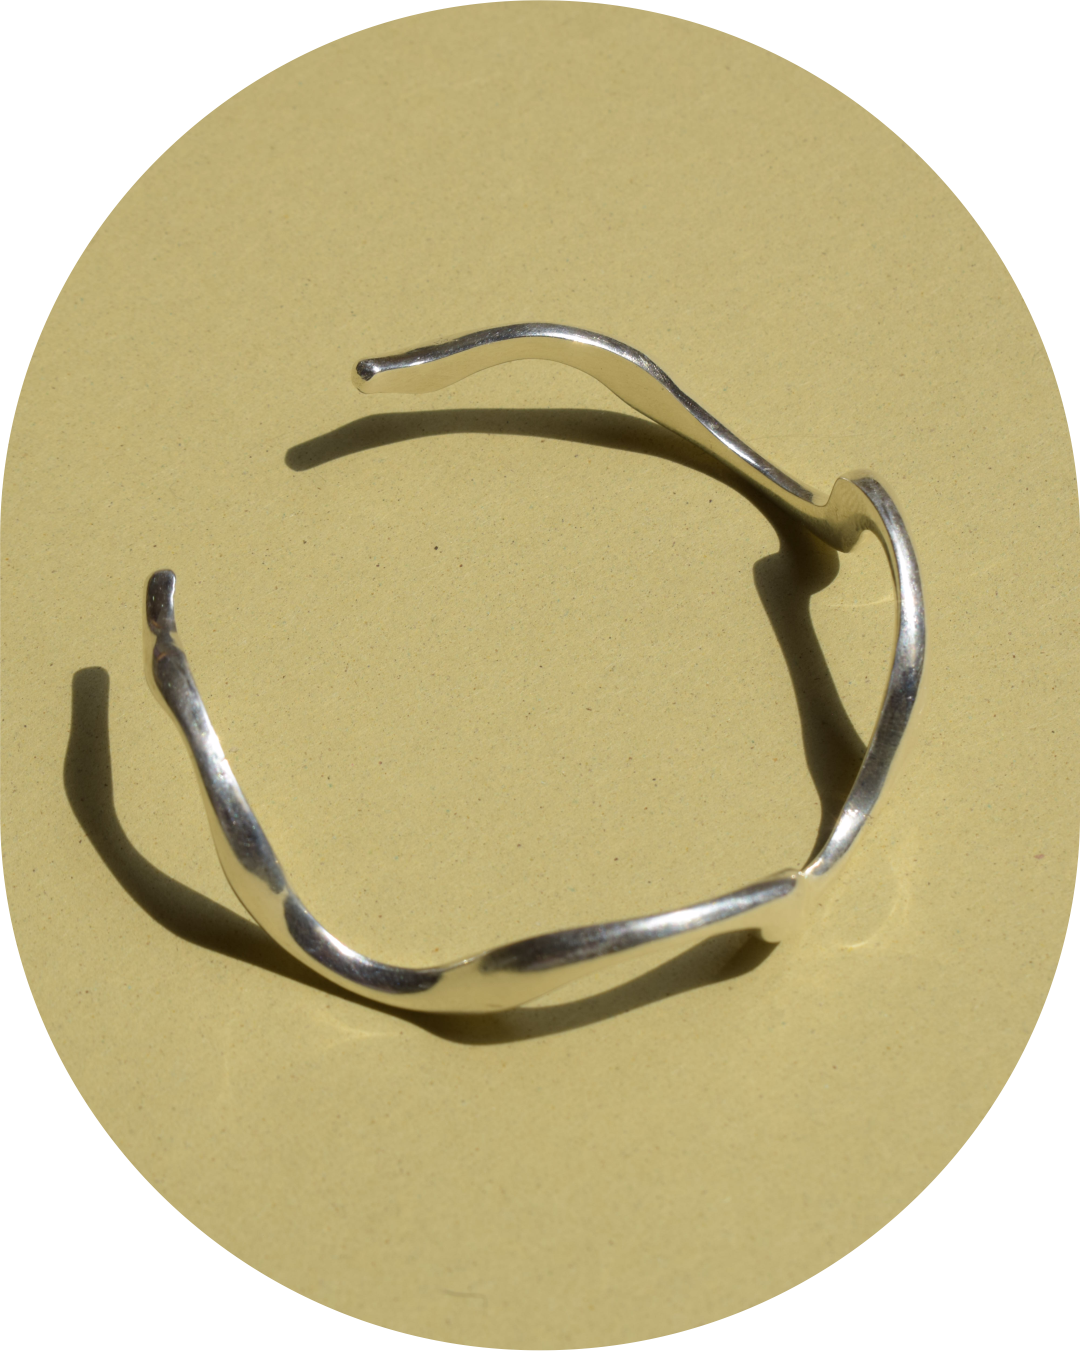 ZAPAL Bracelet - Silver